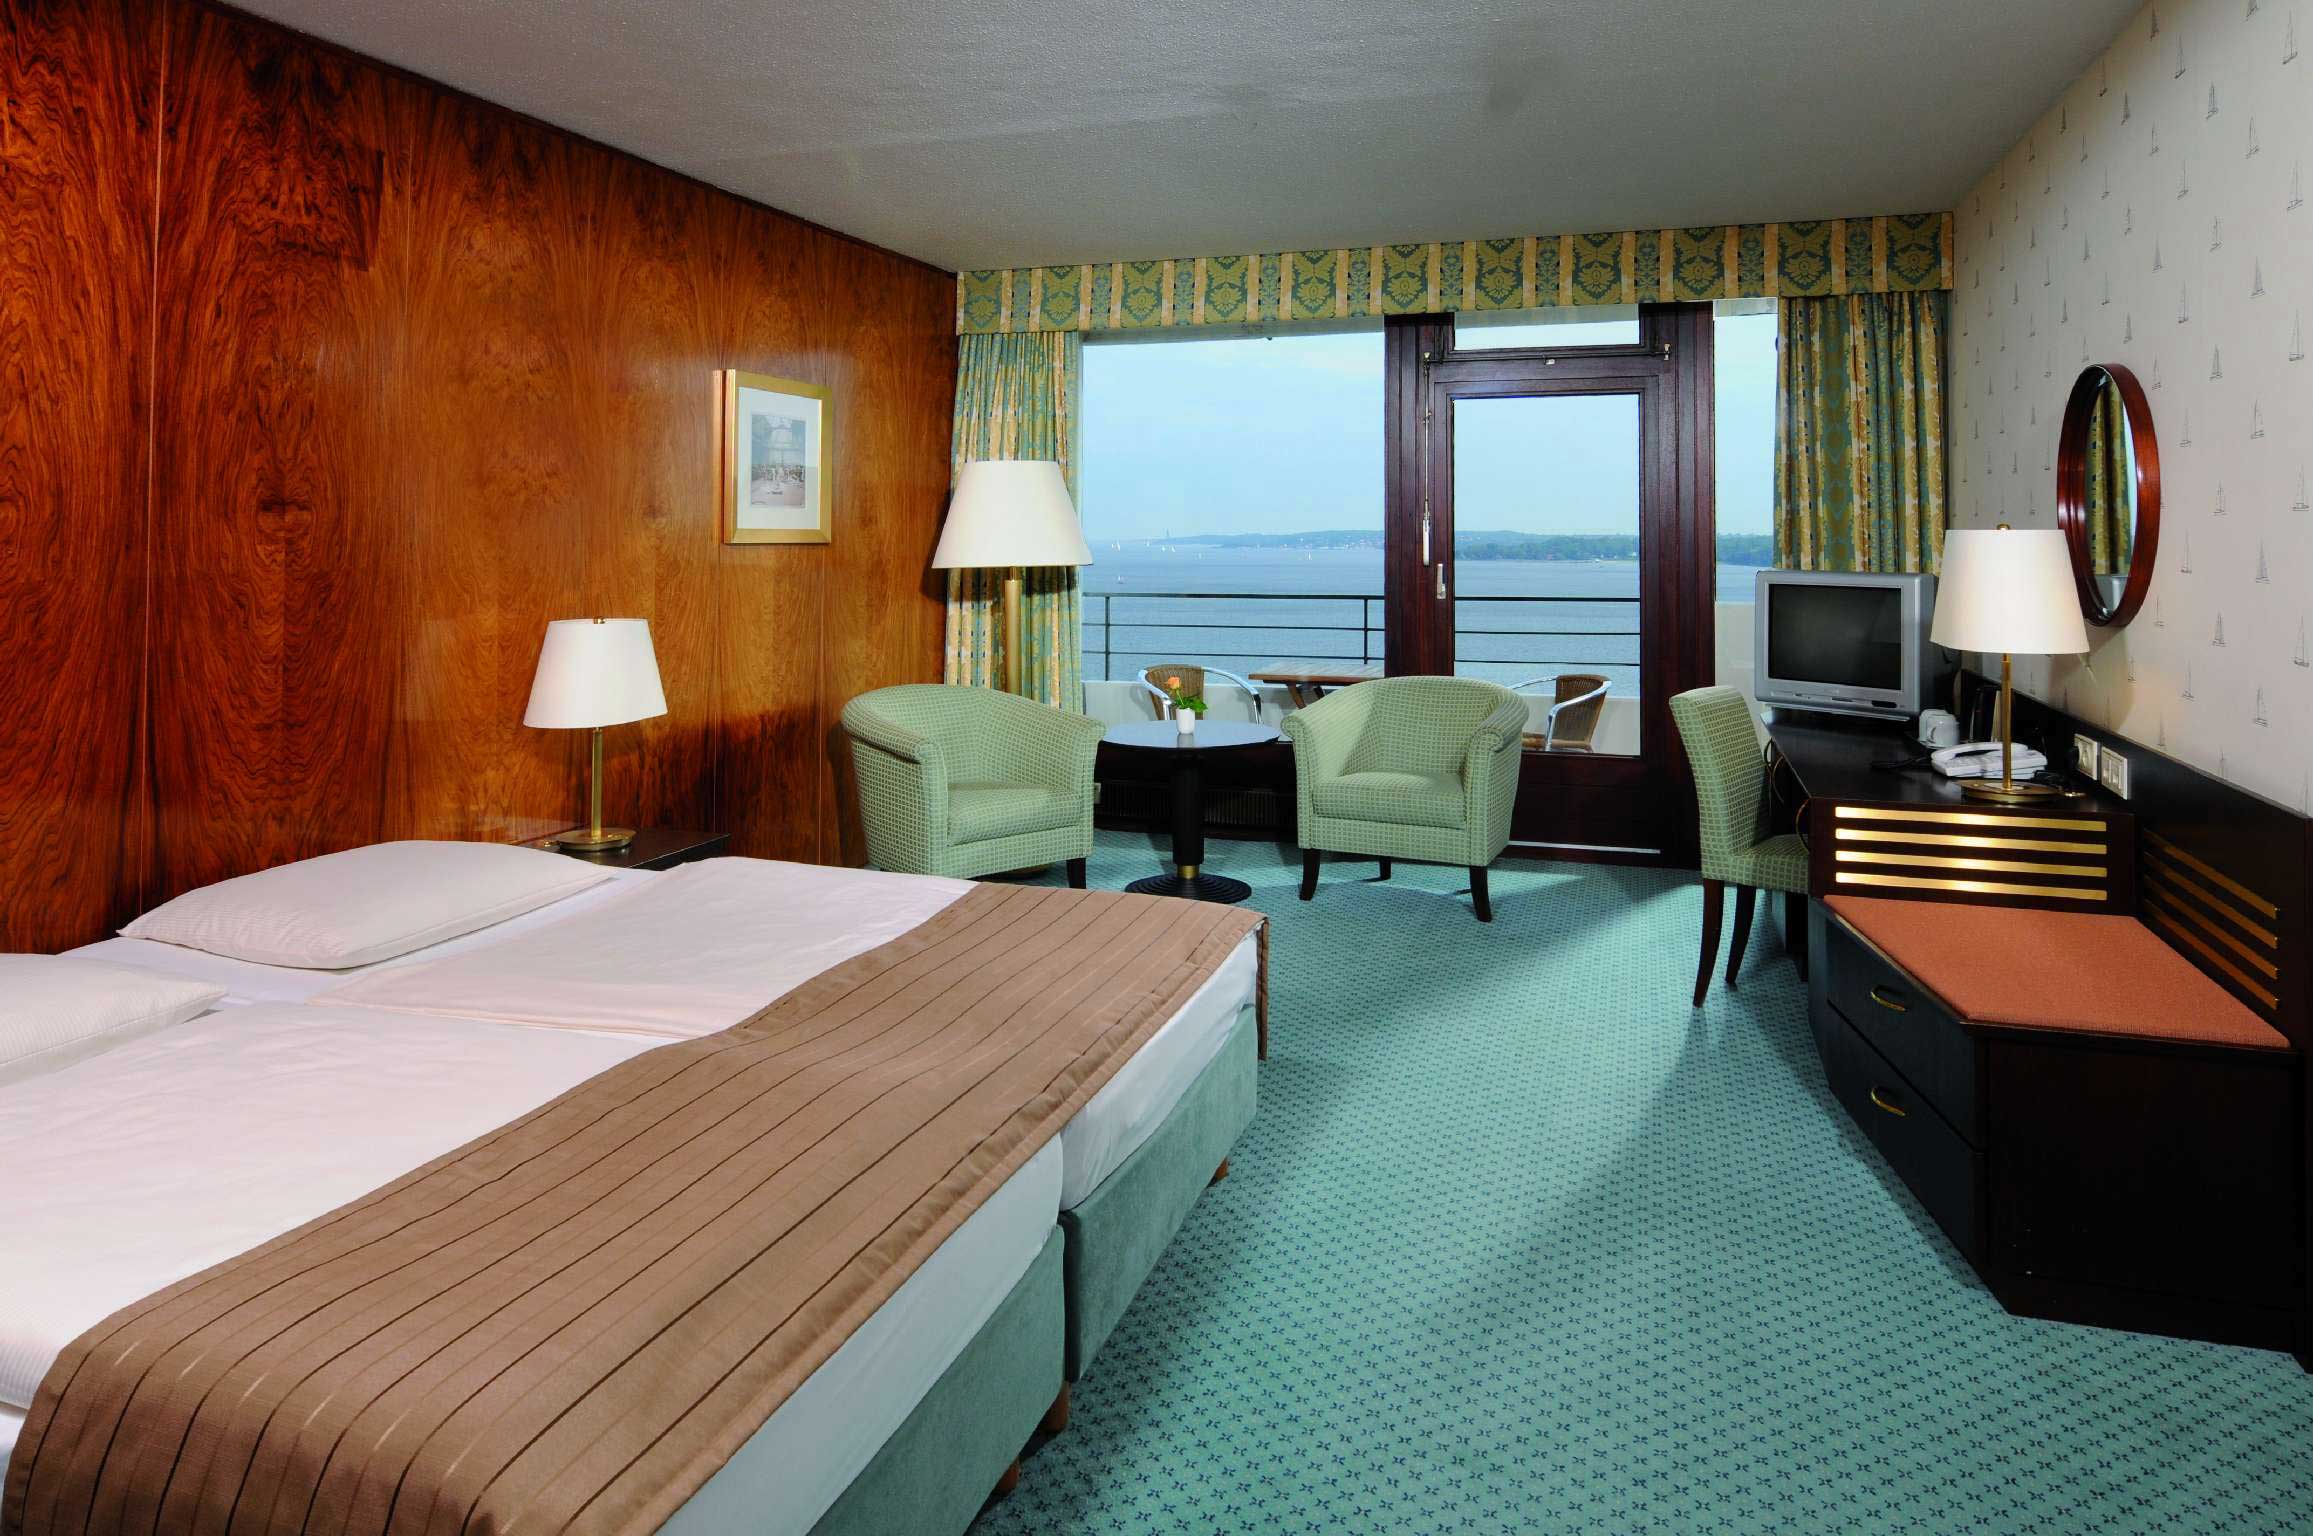 Superior Zimmer im Maritim Hotel Bellevue, Kiel.
